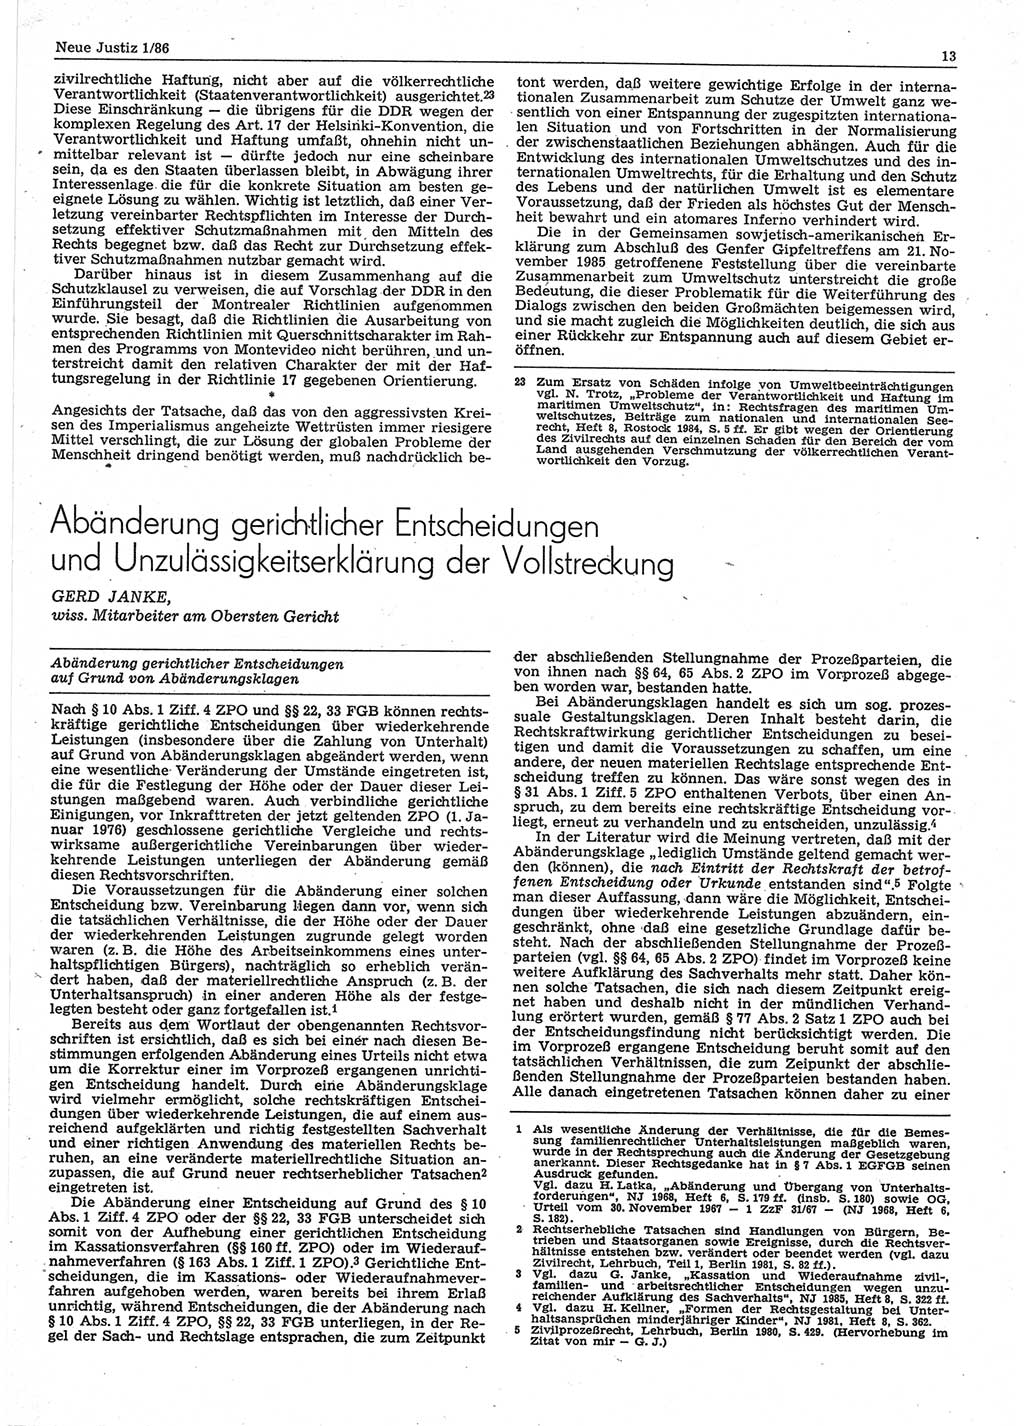 Neue Justiz (NJ), Zeitschrift für sozialistisches Recht und Gesetzlichkeit [Deutsche Demokratische Republik (DDR)], 40. Jahrgang 1986, Seite 13 (NJ DDR 1986, S. 13)